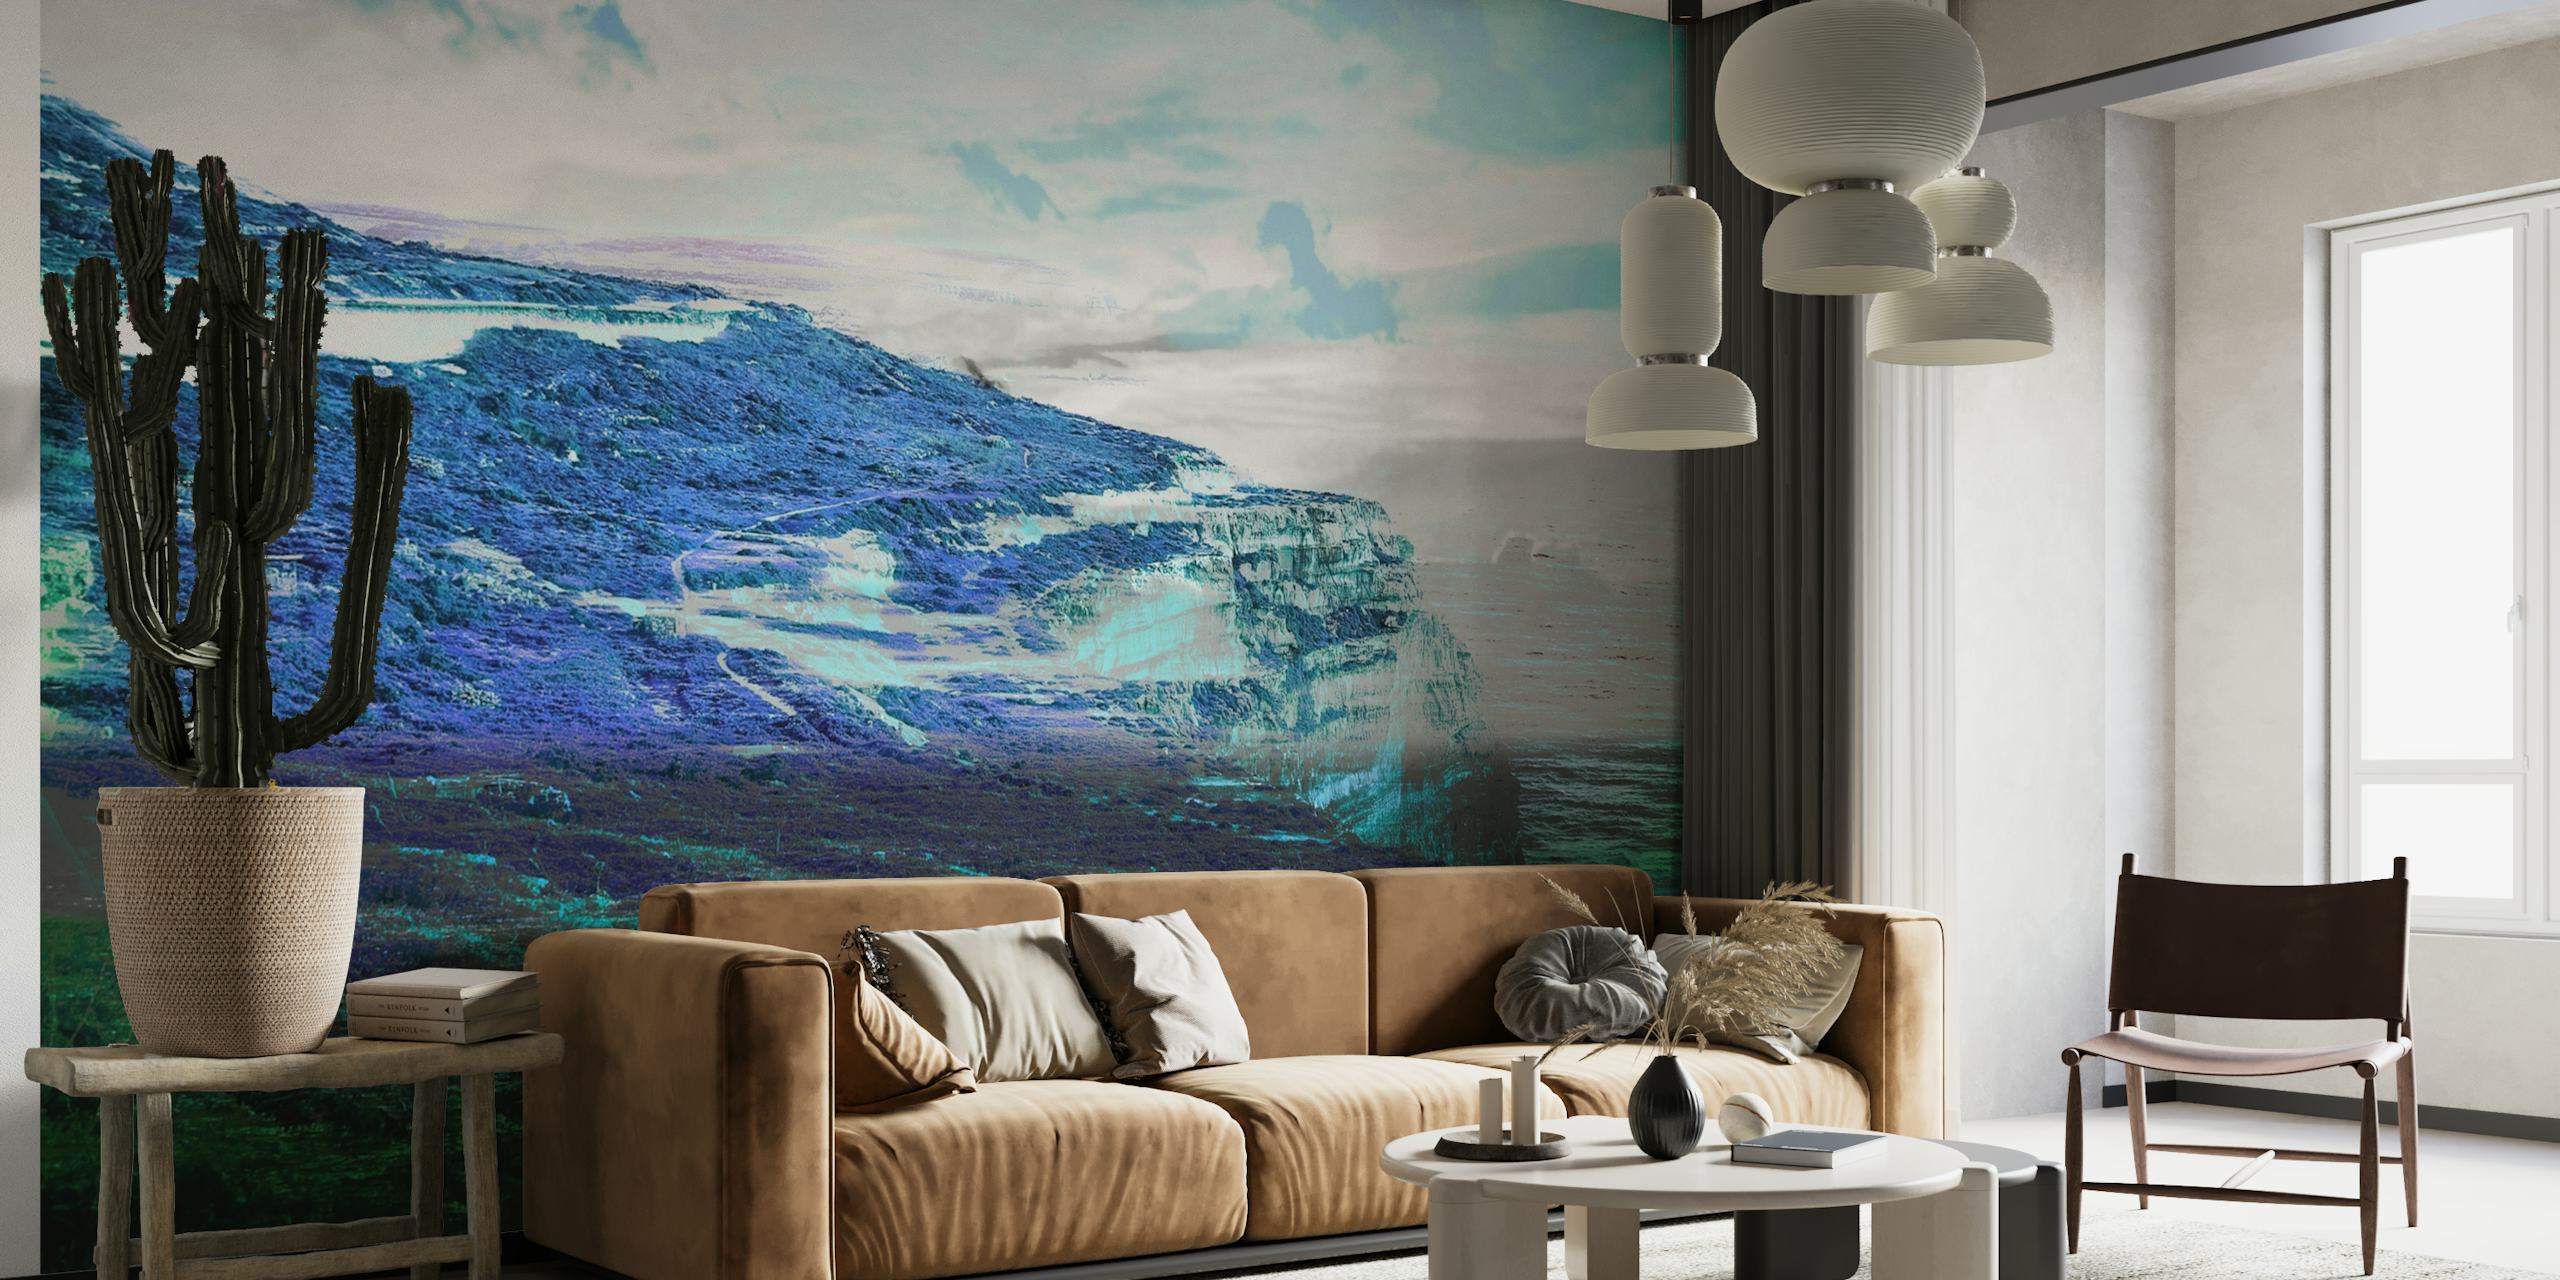 Fotomural vinílico de paisagem montanhosa nórdica com tons azuis e verdes enevoados